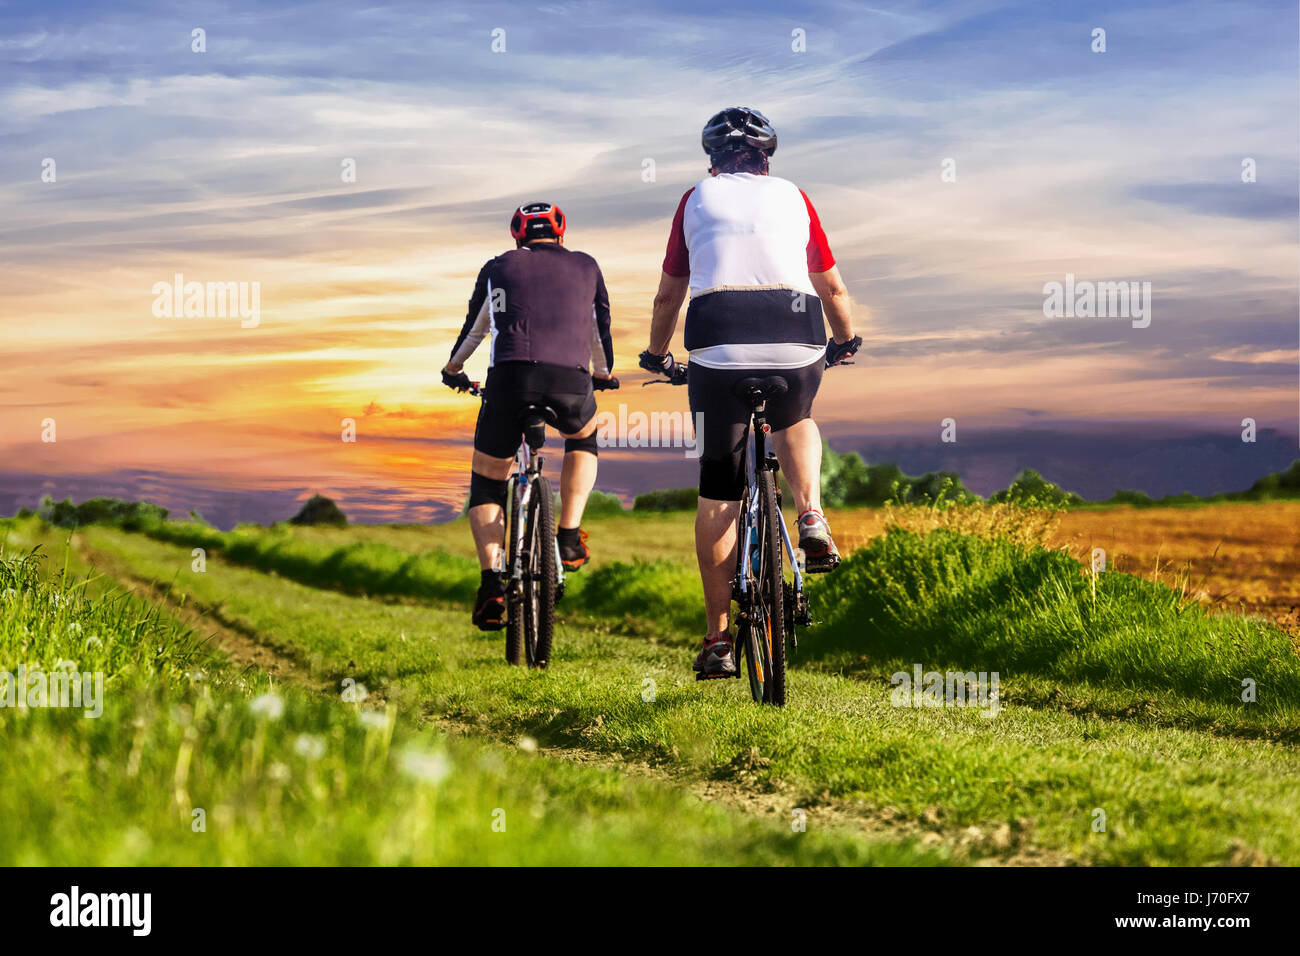 La coppia giro in bicicletta sul paesaggio di strada campo retro-vista, tramonto, due persone in bicicletta su strada rurale, campagna, stile di vita sano Repubblica Ceca Foto Stock